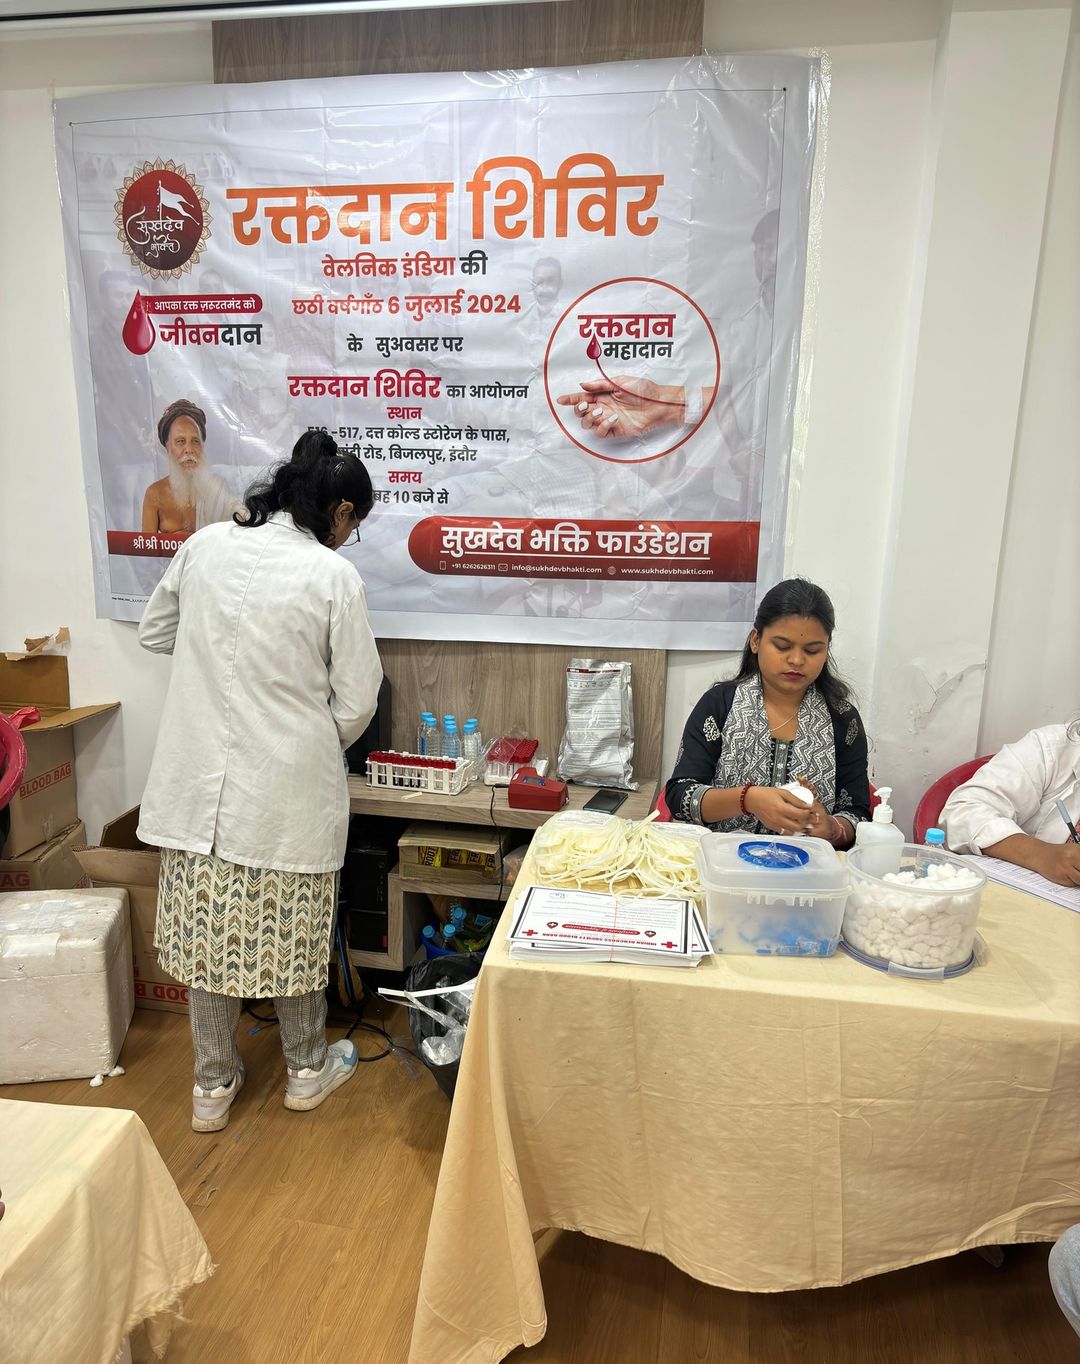 सुखदेव भक्ति फाउंडेशन ने रेड क्रॉस एसोसिएशन के सहयोग से एक महत्वपूर्ण रक्तदान शिविर का आयोजन किया